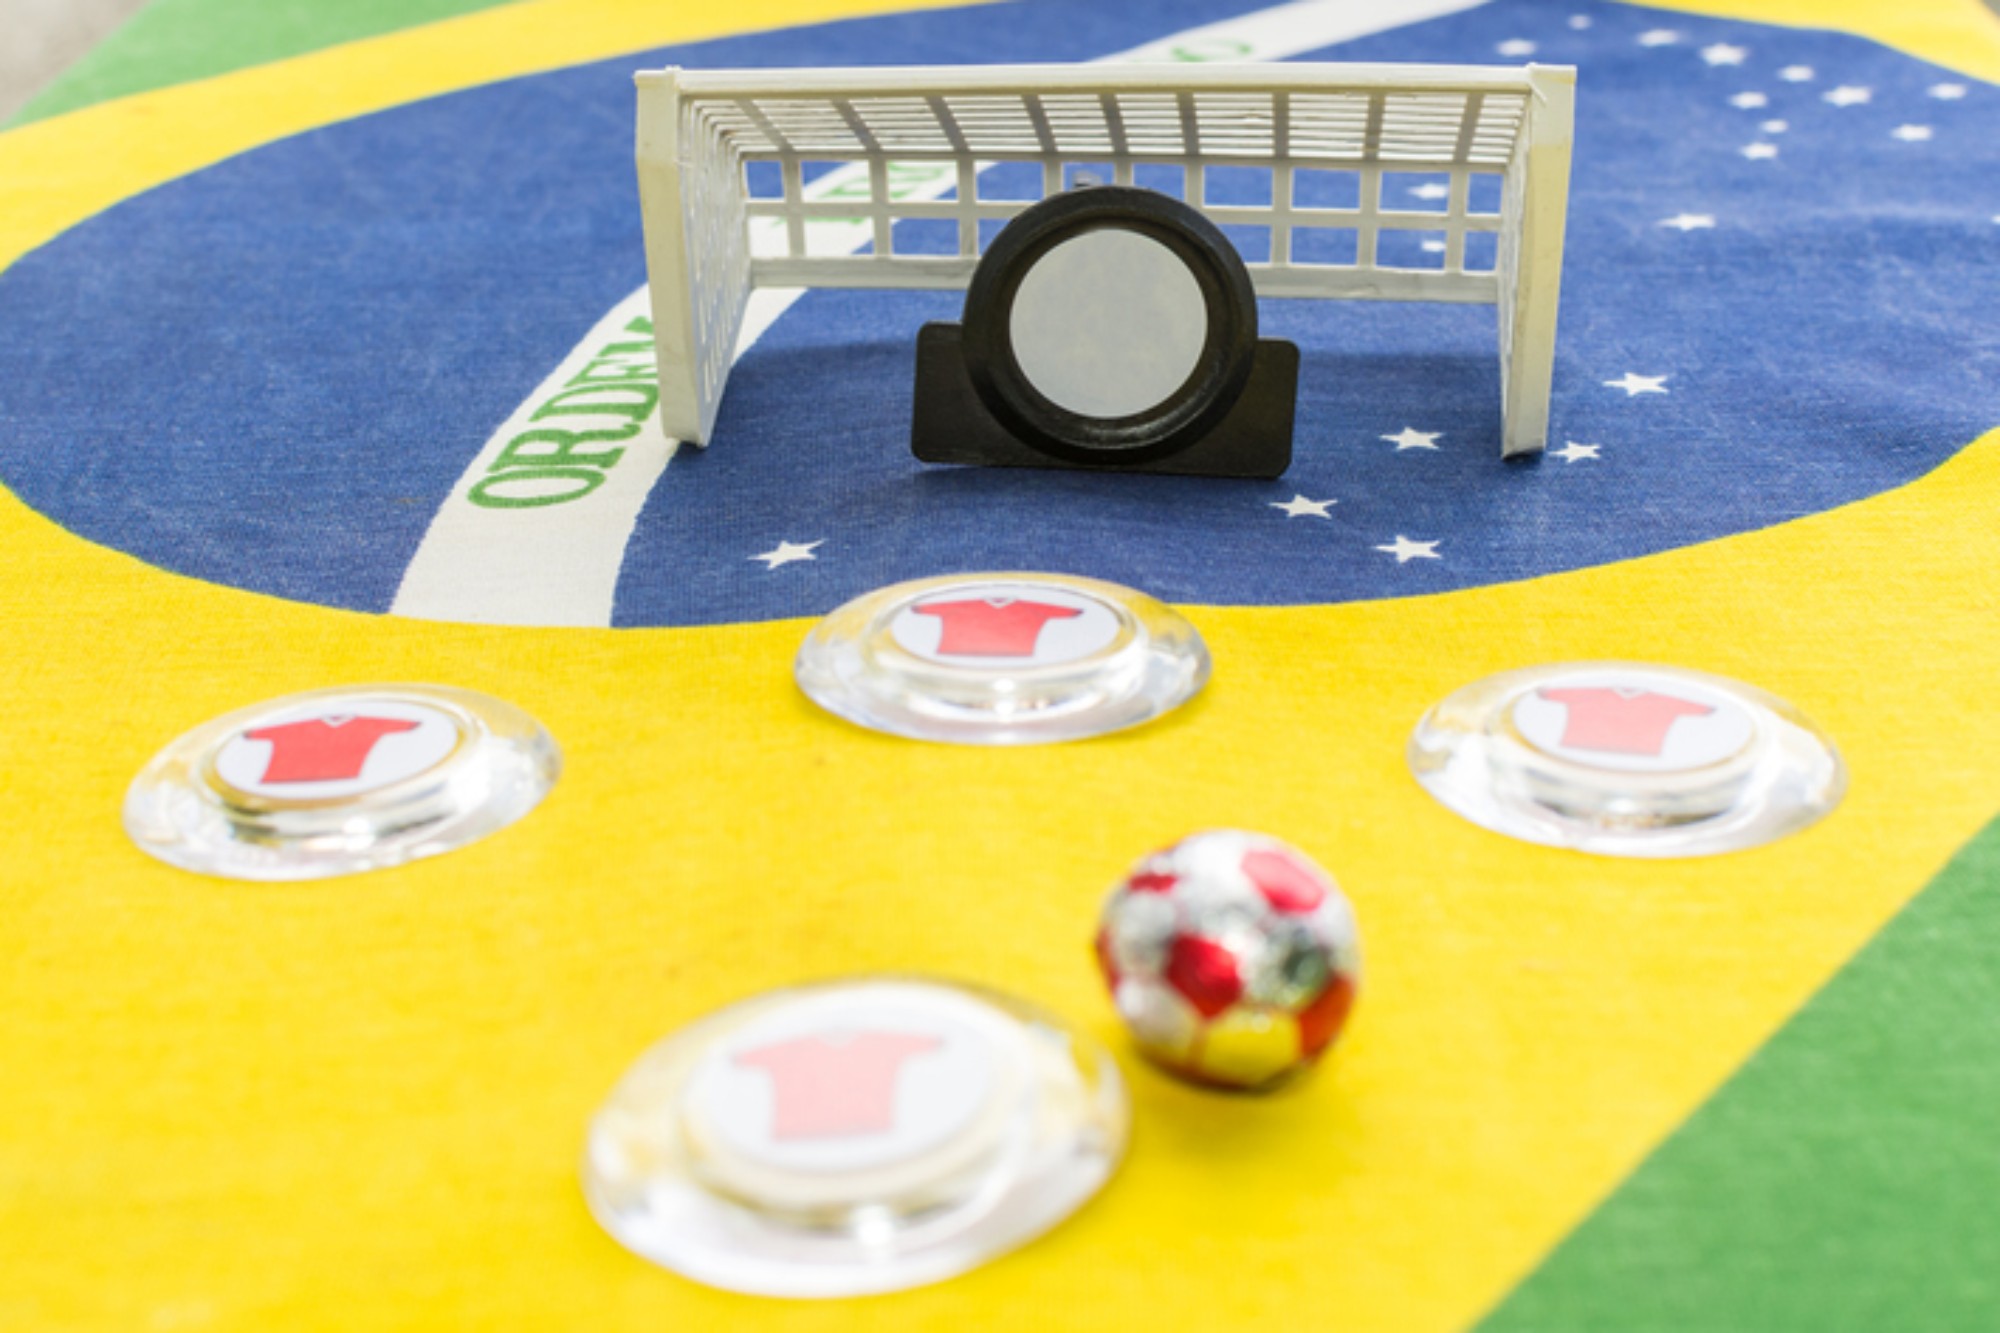 Descubra o que é futebol de botão e como jogar com seus filhos